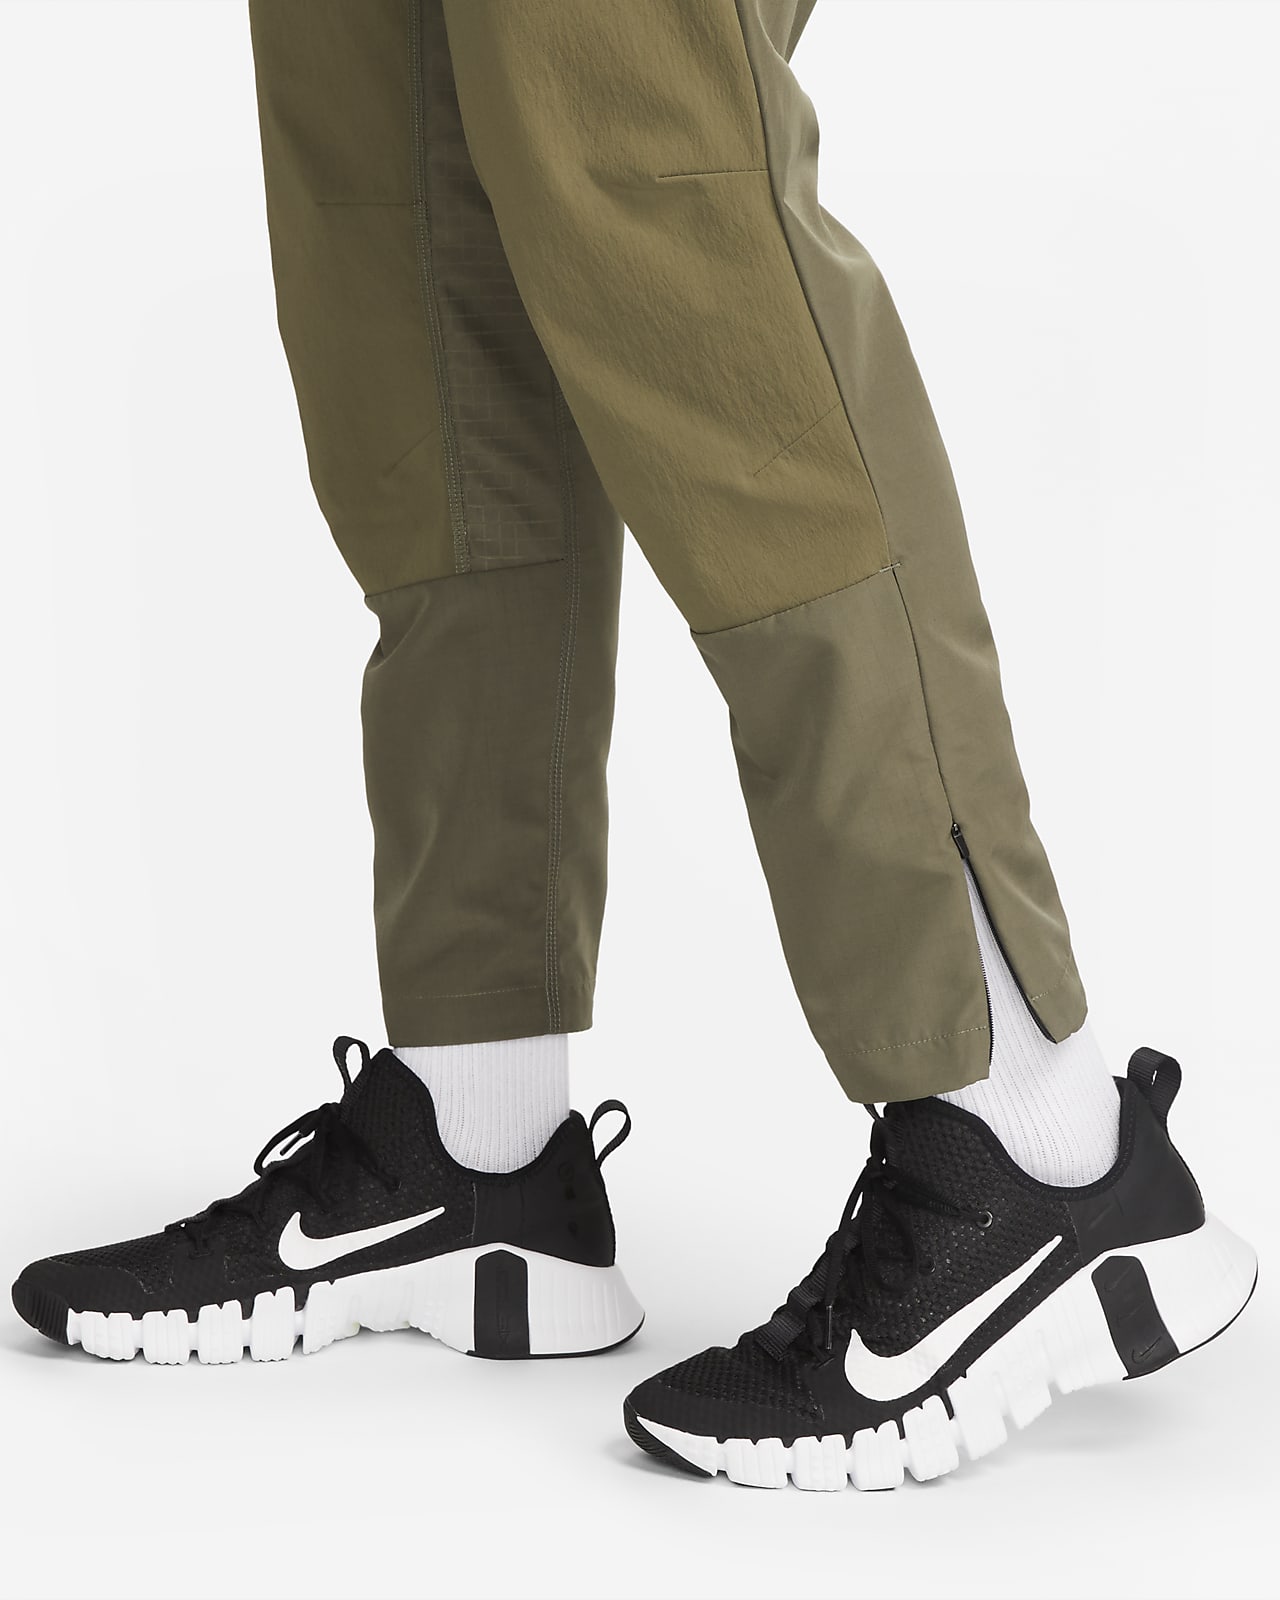 Nike A.P.S. Men's Dri-FIT ADV Woven Versatile Pants.